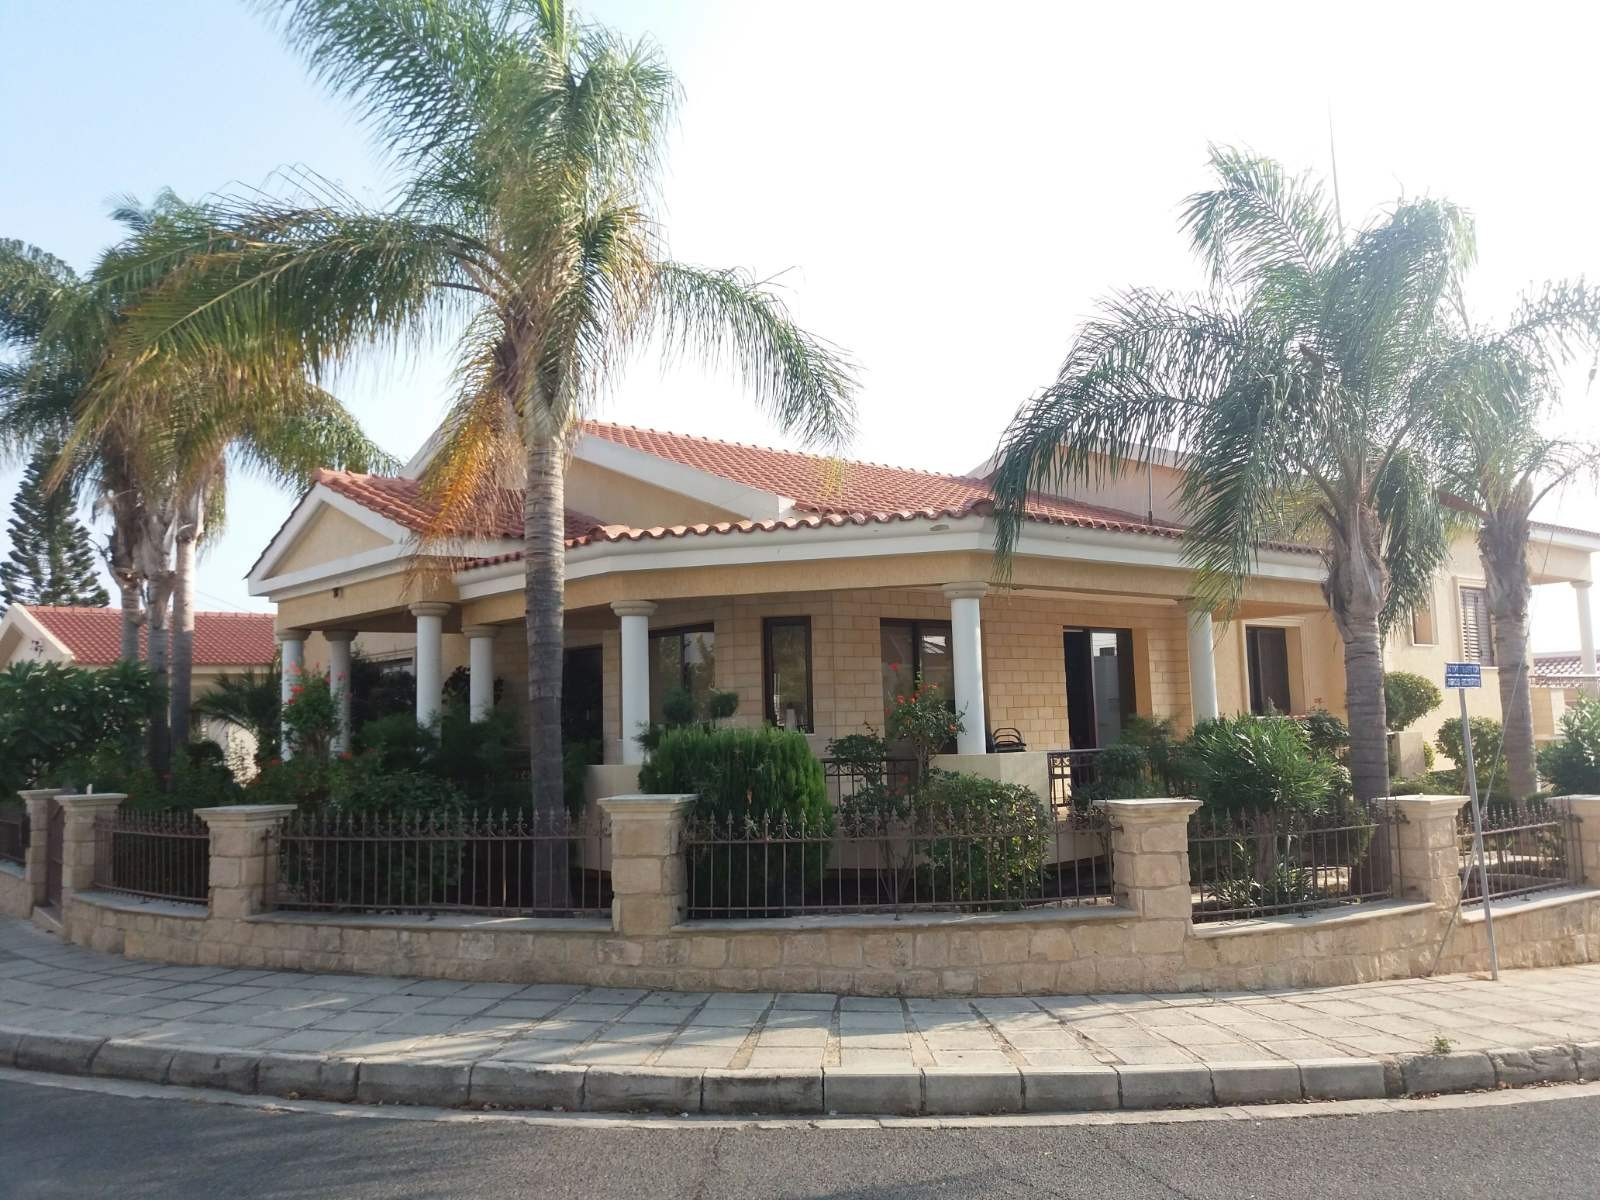 https://www.ktimatagora.com/media/property-images/133456-detached-villa-for-sale-in-lempa_orig.jpg